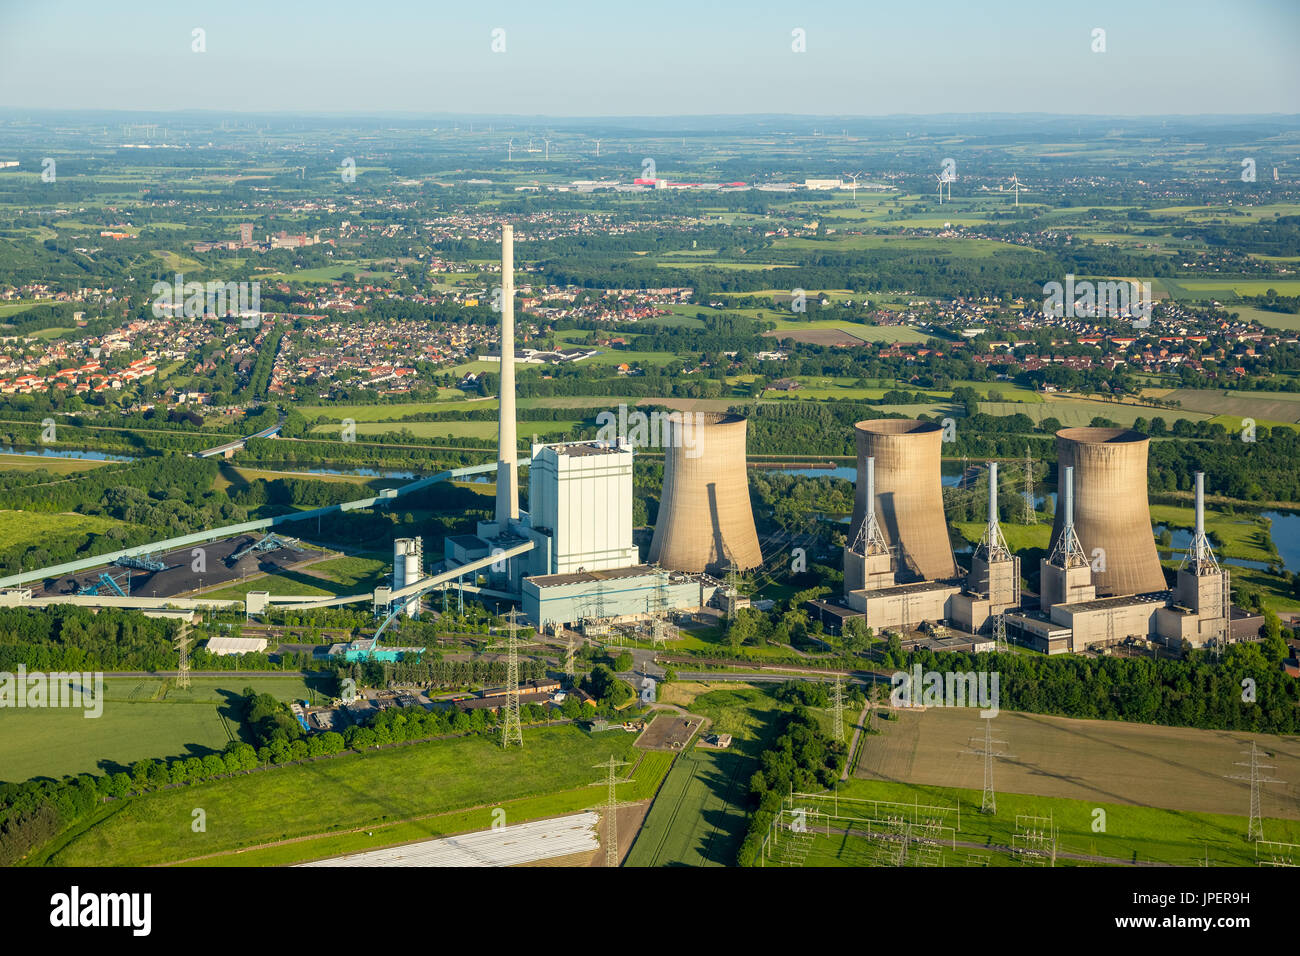 Gersteinwerk, Inogy, RWE Power, Kohlekraftwerk in Werne-Stockum auf der Stadtgrenze zu Hamm, Datteln-Hamm-Kanal, Werne, Ruhrgebiet, Nordrhein-Westfale Foto Stock